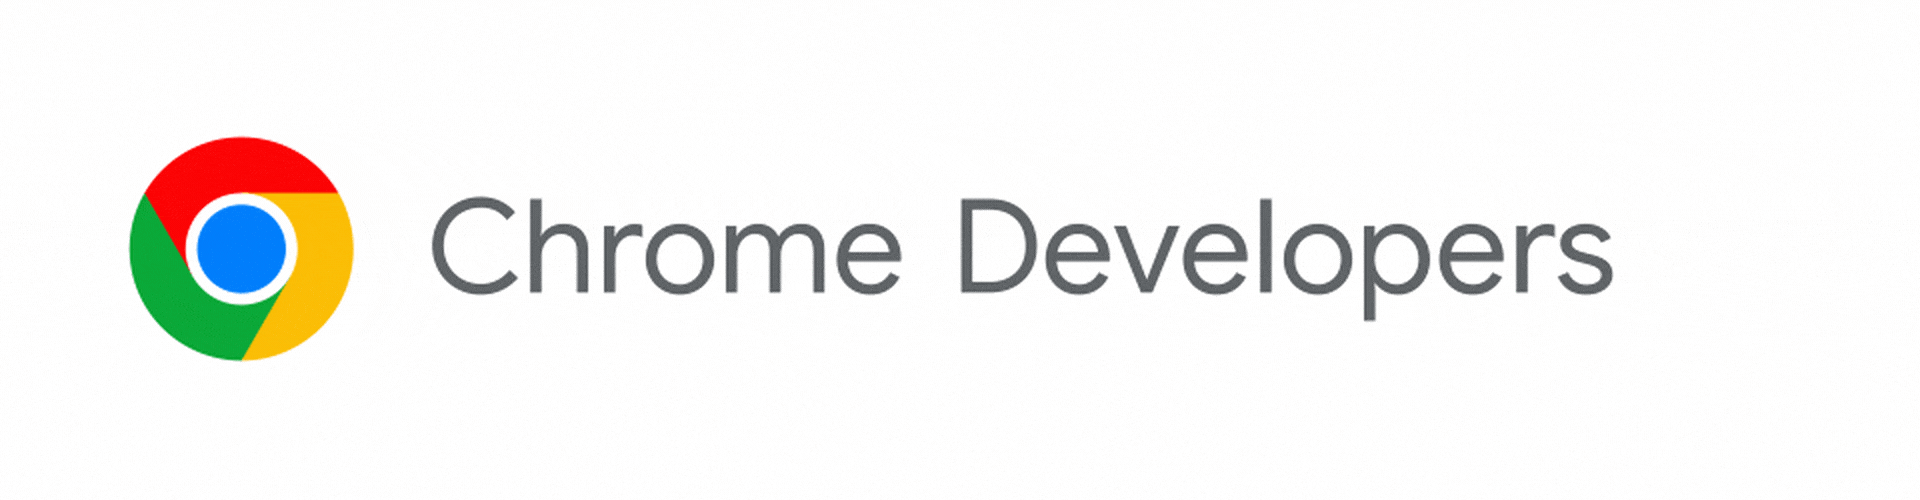 شعار مطوّري برامج Chrome الذي يتحوّل إلى Chrome for Developers